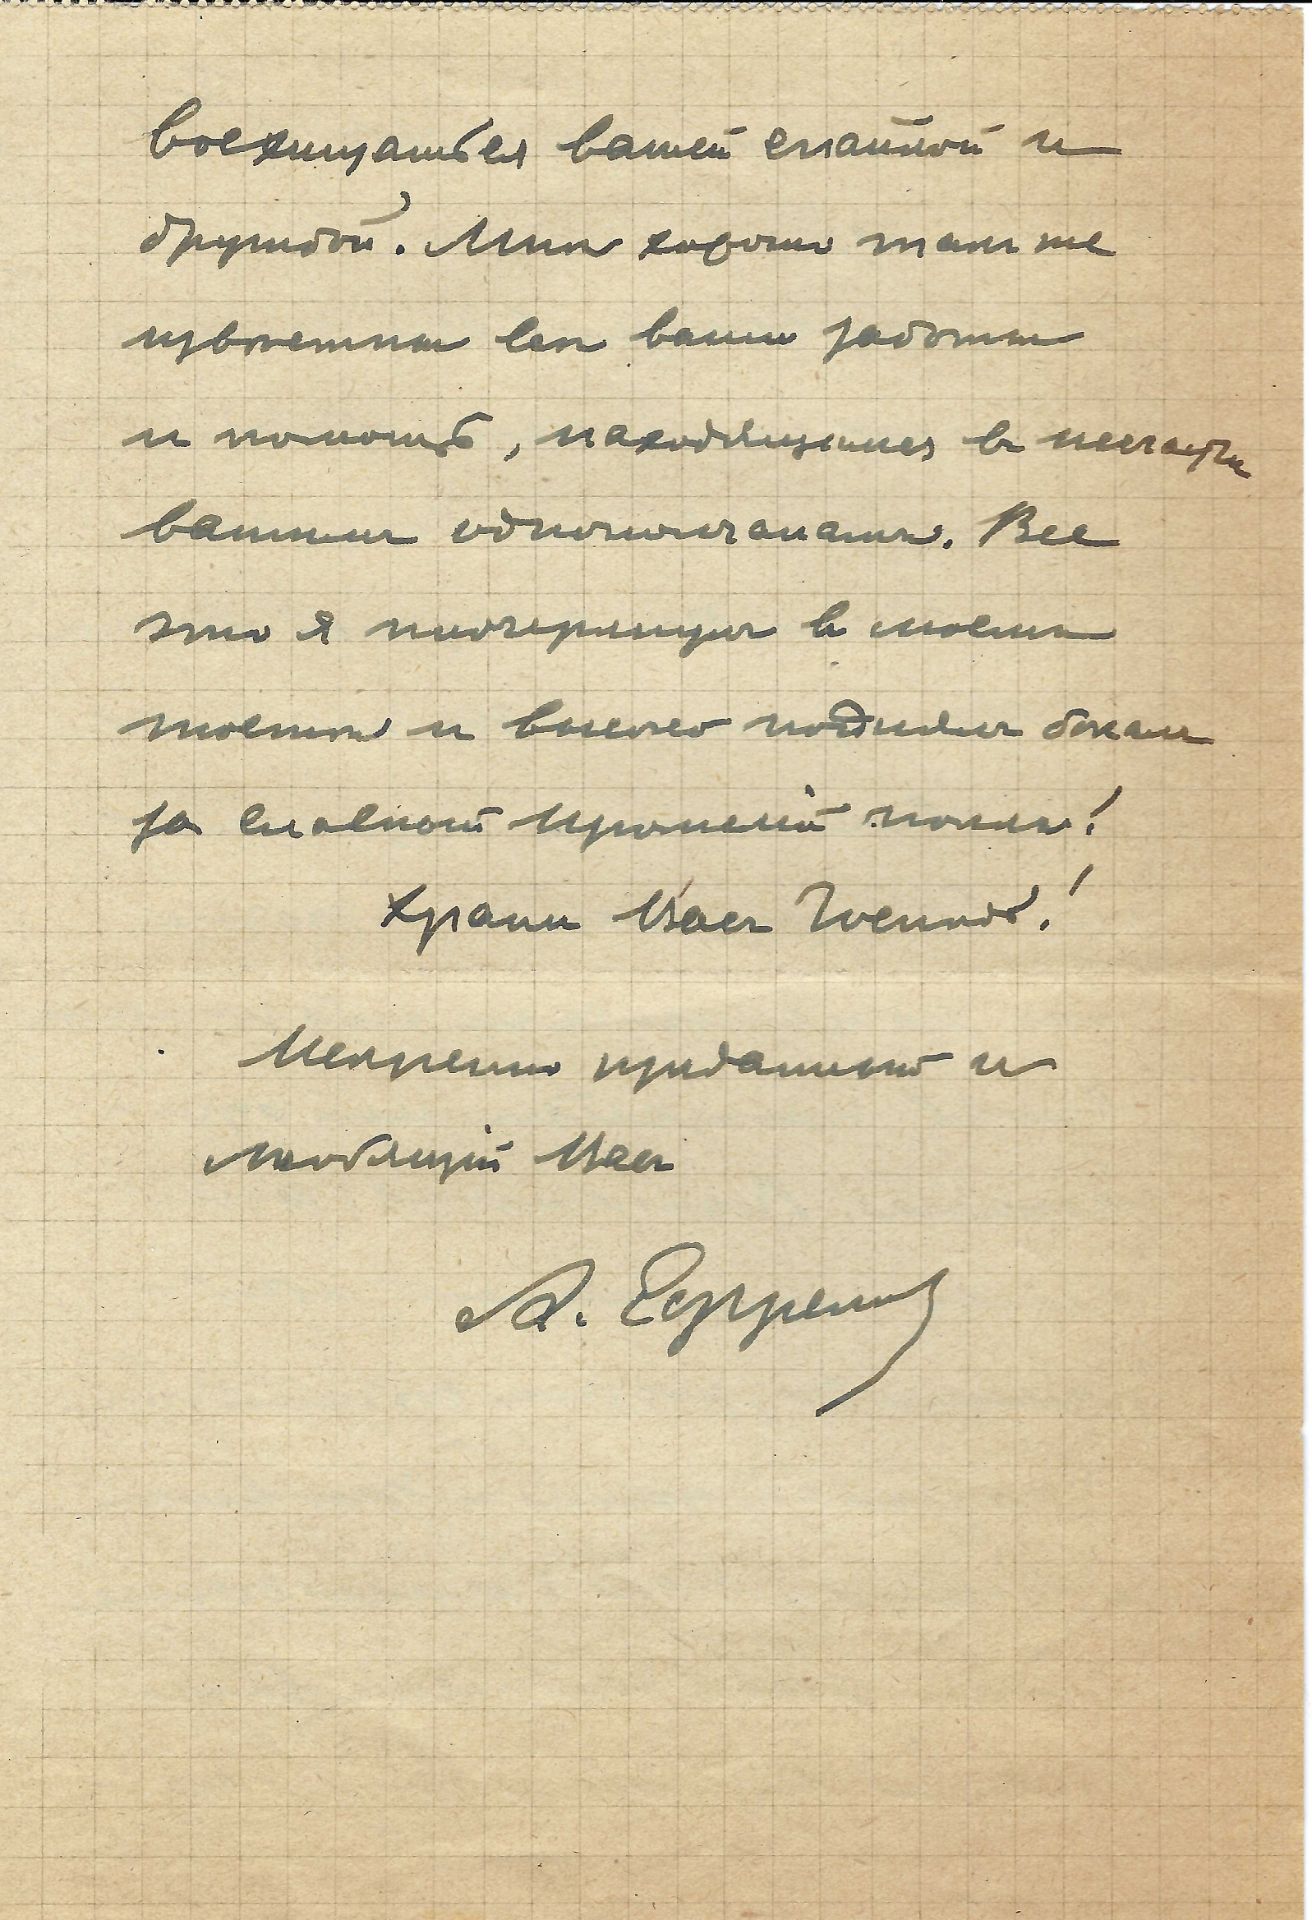 ARCHIVES d’Andreï BALASHOV (1889-1969) • Correspondances avec A.Efremov (1878-1964) en France, V. - Image 7 of 39